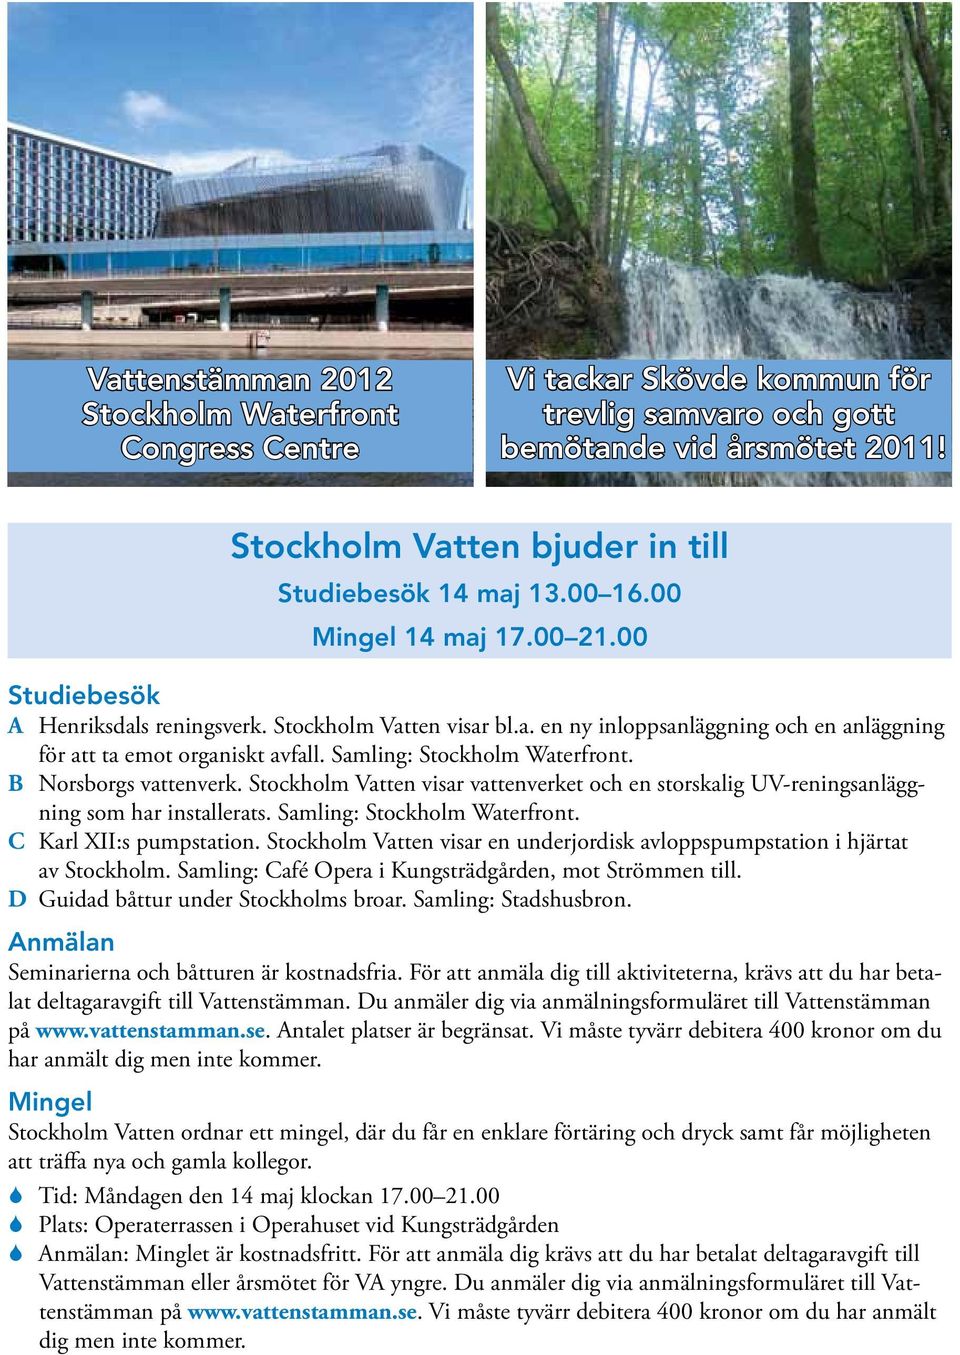 Samling: Stockholm Waterfront. B Norsborgs vattenverk. Stockholm Vatten visar vattenverket och en storskalig UV-reningsanläggning som har installerats. Samling: Stockholm Waterfront.